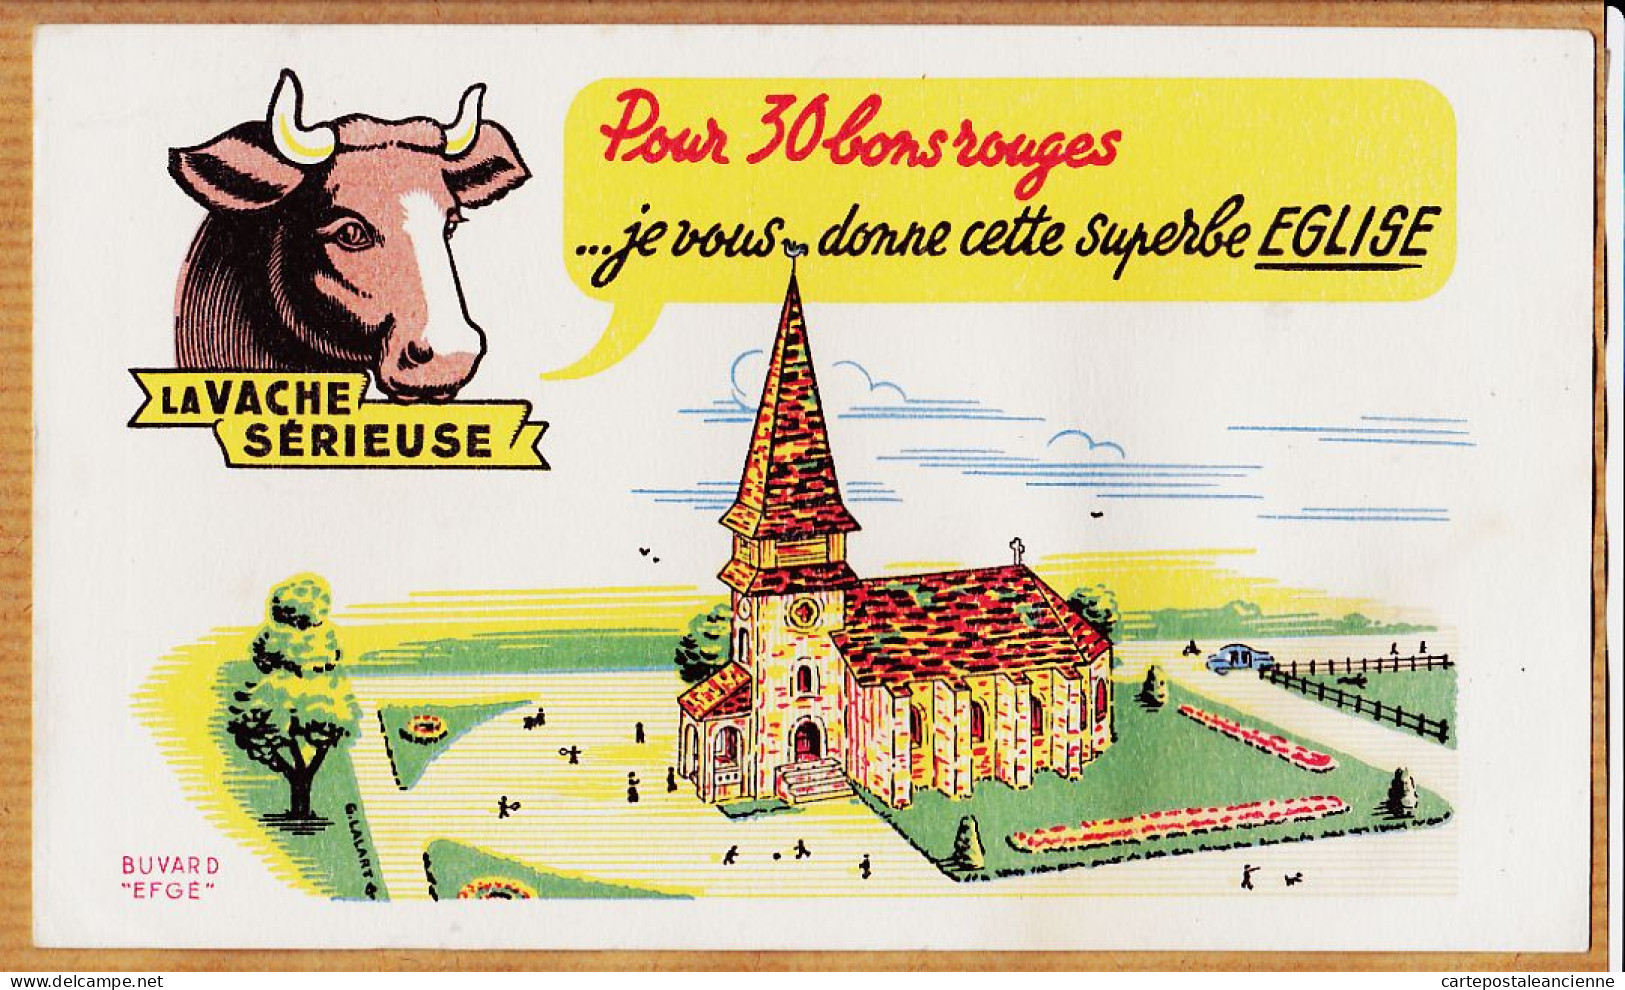 14851 / ⭐ LA VACHE SERIEUSE Crème Double Crème De Gruyère Pour 30 Bons Cette Superbe Eglise / Buvard EFGE 1950s Cppub - Food